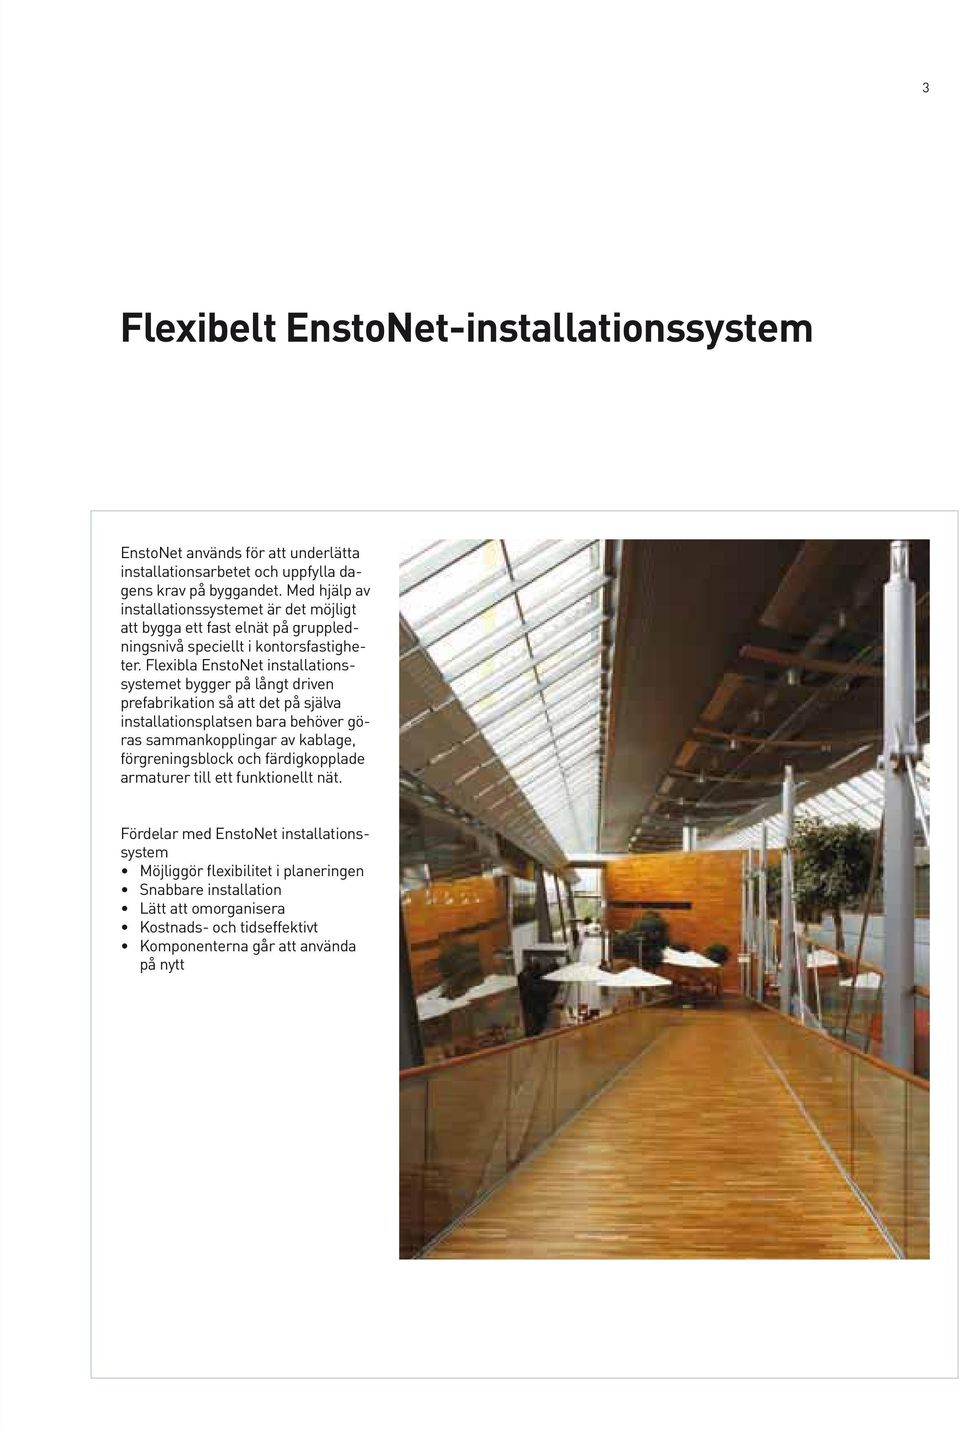 Flexibla EnstoNet installationssystemet bygger på långt driven prefabrikation så att det på själva installationsplatsen bara behöver göras sammankopplingar av kablage,